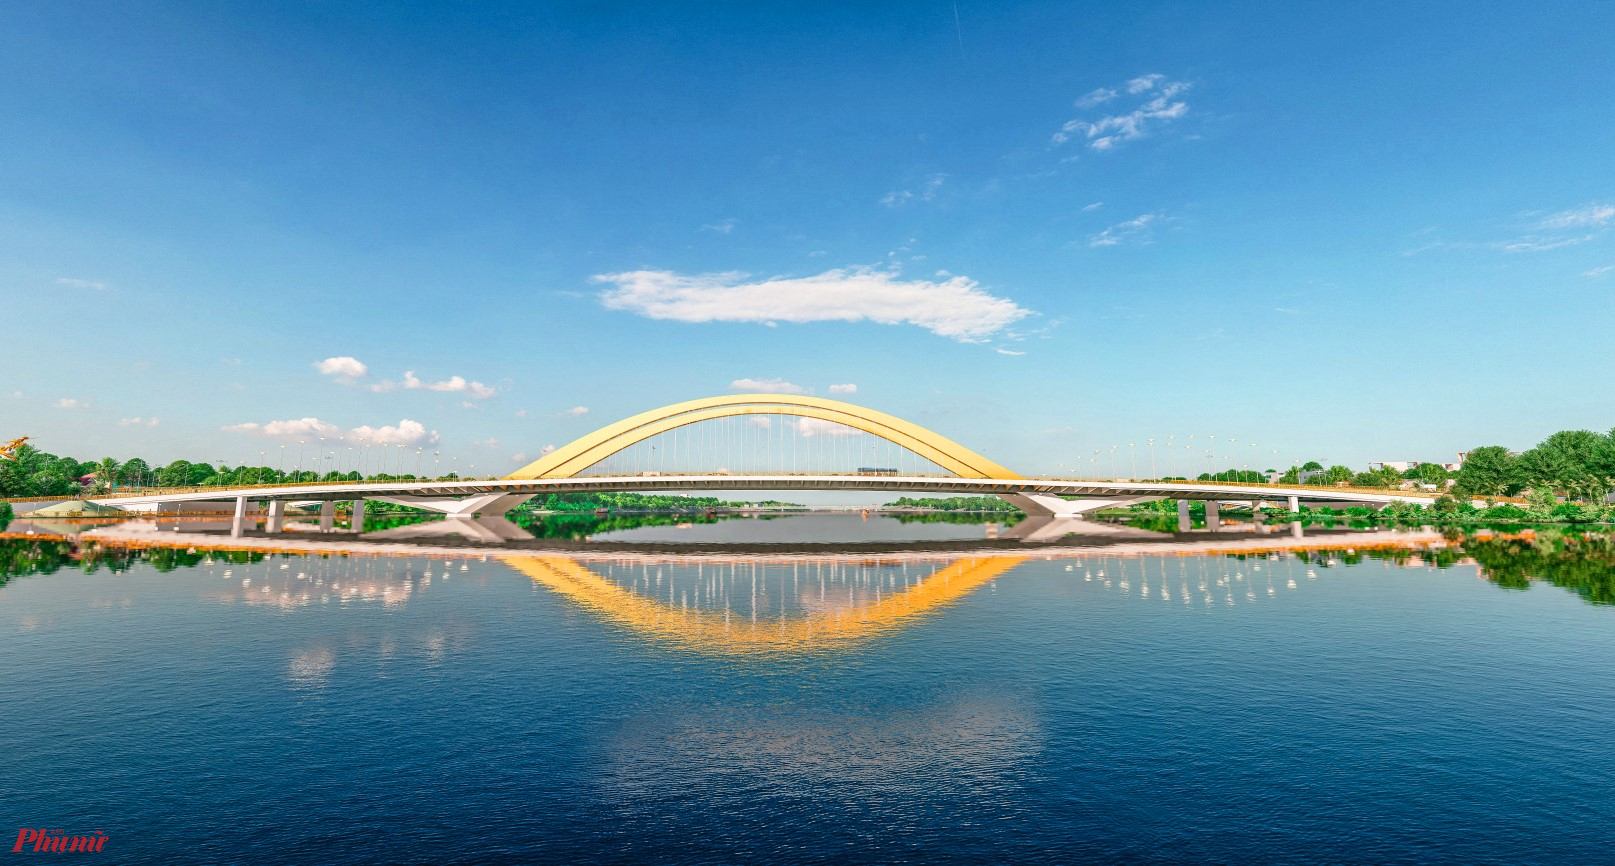 Cầu vượt sông Hương do liên danh Công ty TNHH WSP Phần Lan và Công ty cổ phần Tư vấn kỹ thuật E&R thiết kế 